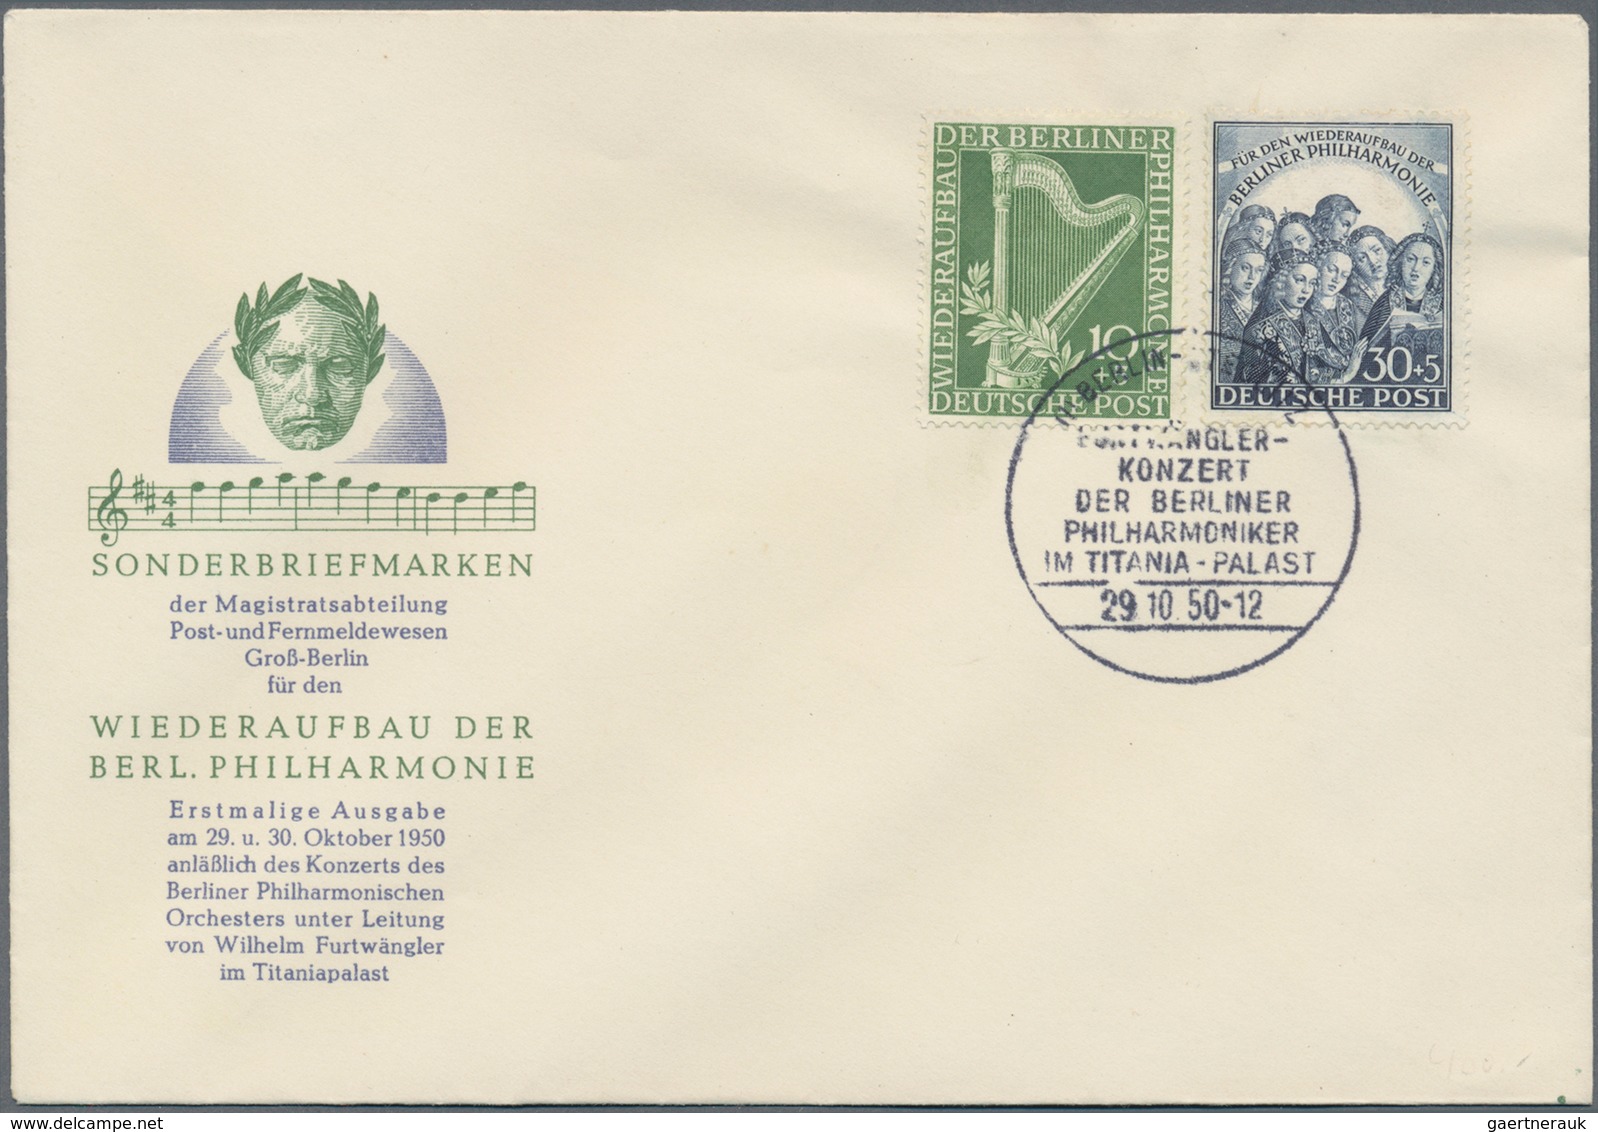 Berlin: 1947/1990, reichhaltiger und vielseitiger Bestand von (vorsichtig geschätzt) ca. 500 Briefen